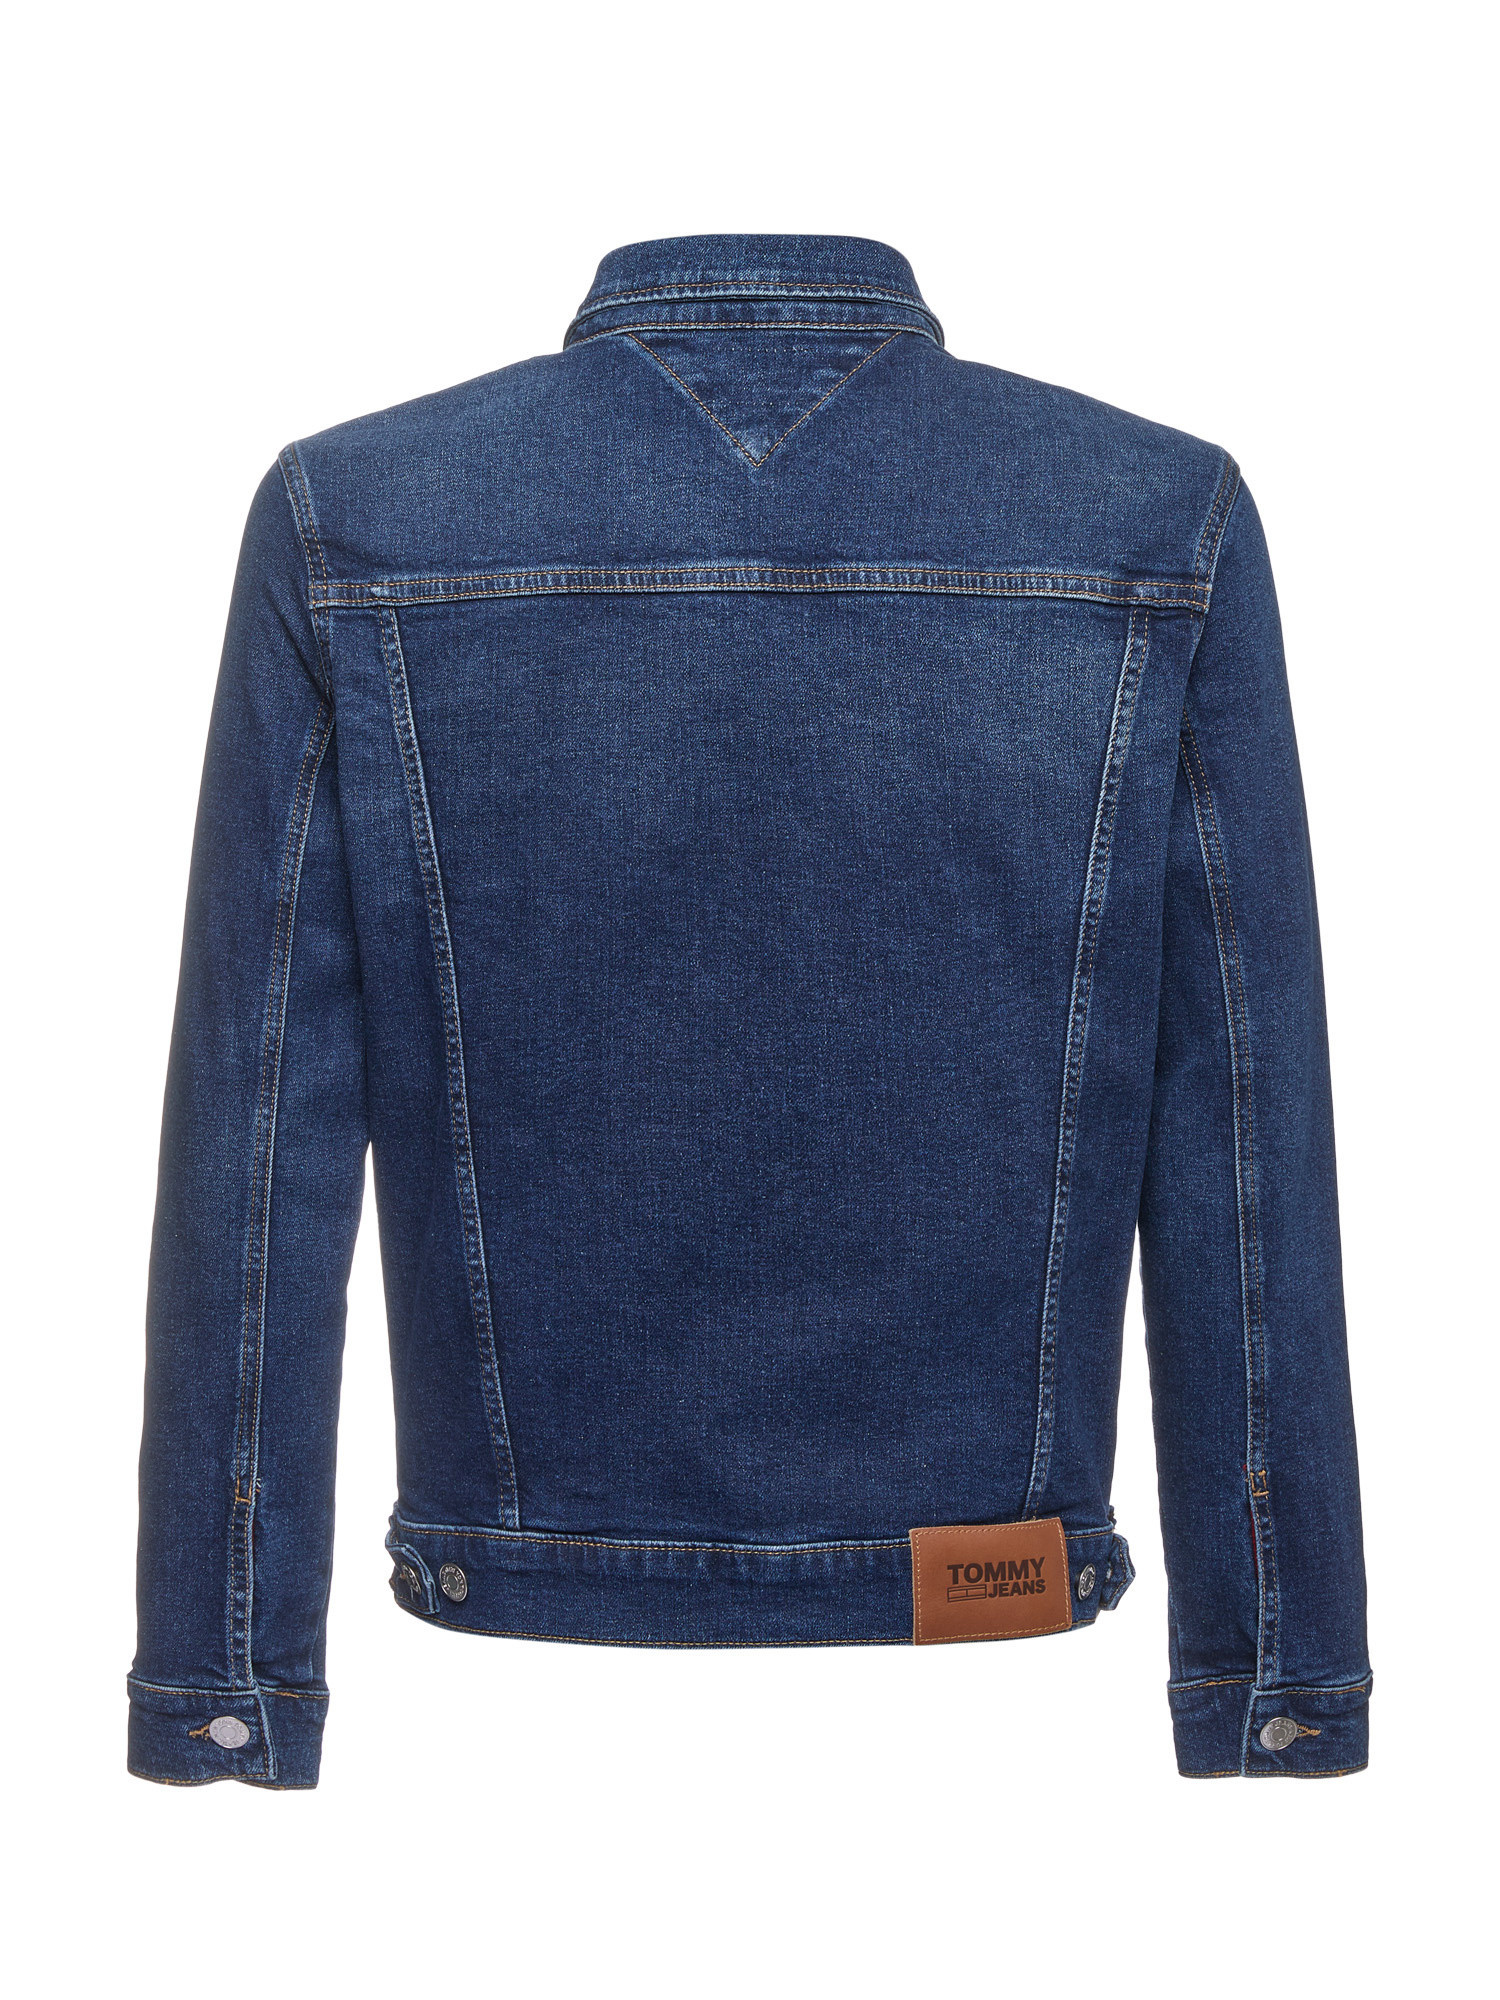 Tommy Jeans - Denim jacket, Denim, large image number 1